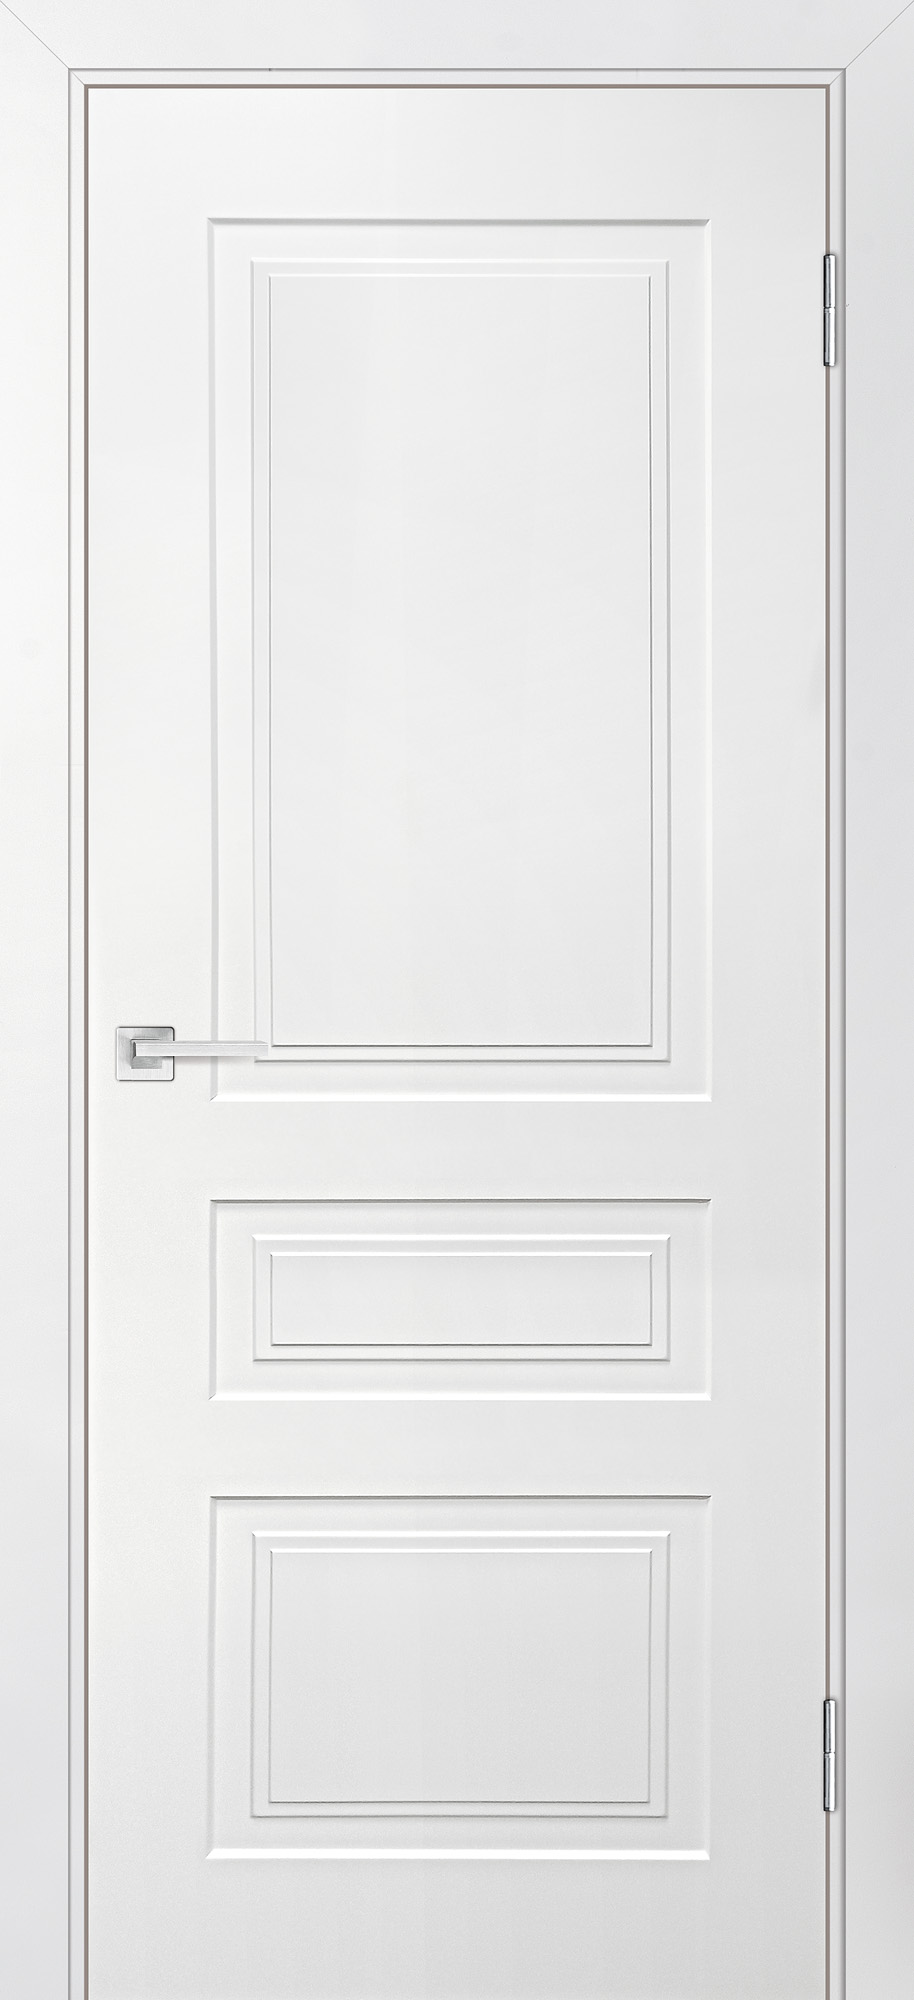 Двери крашеные (Эмаль) ТЕКОНА Смальта-Лайн 05 глухое Белый ral 9003 размер 190 х 55 см. артикул F0000093240